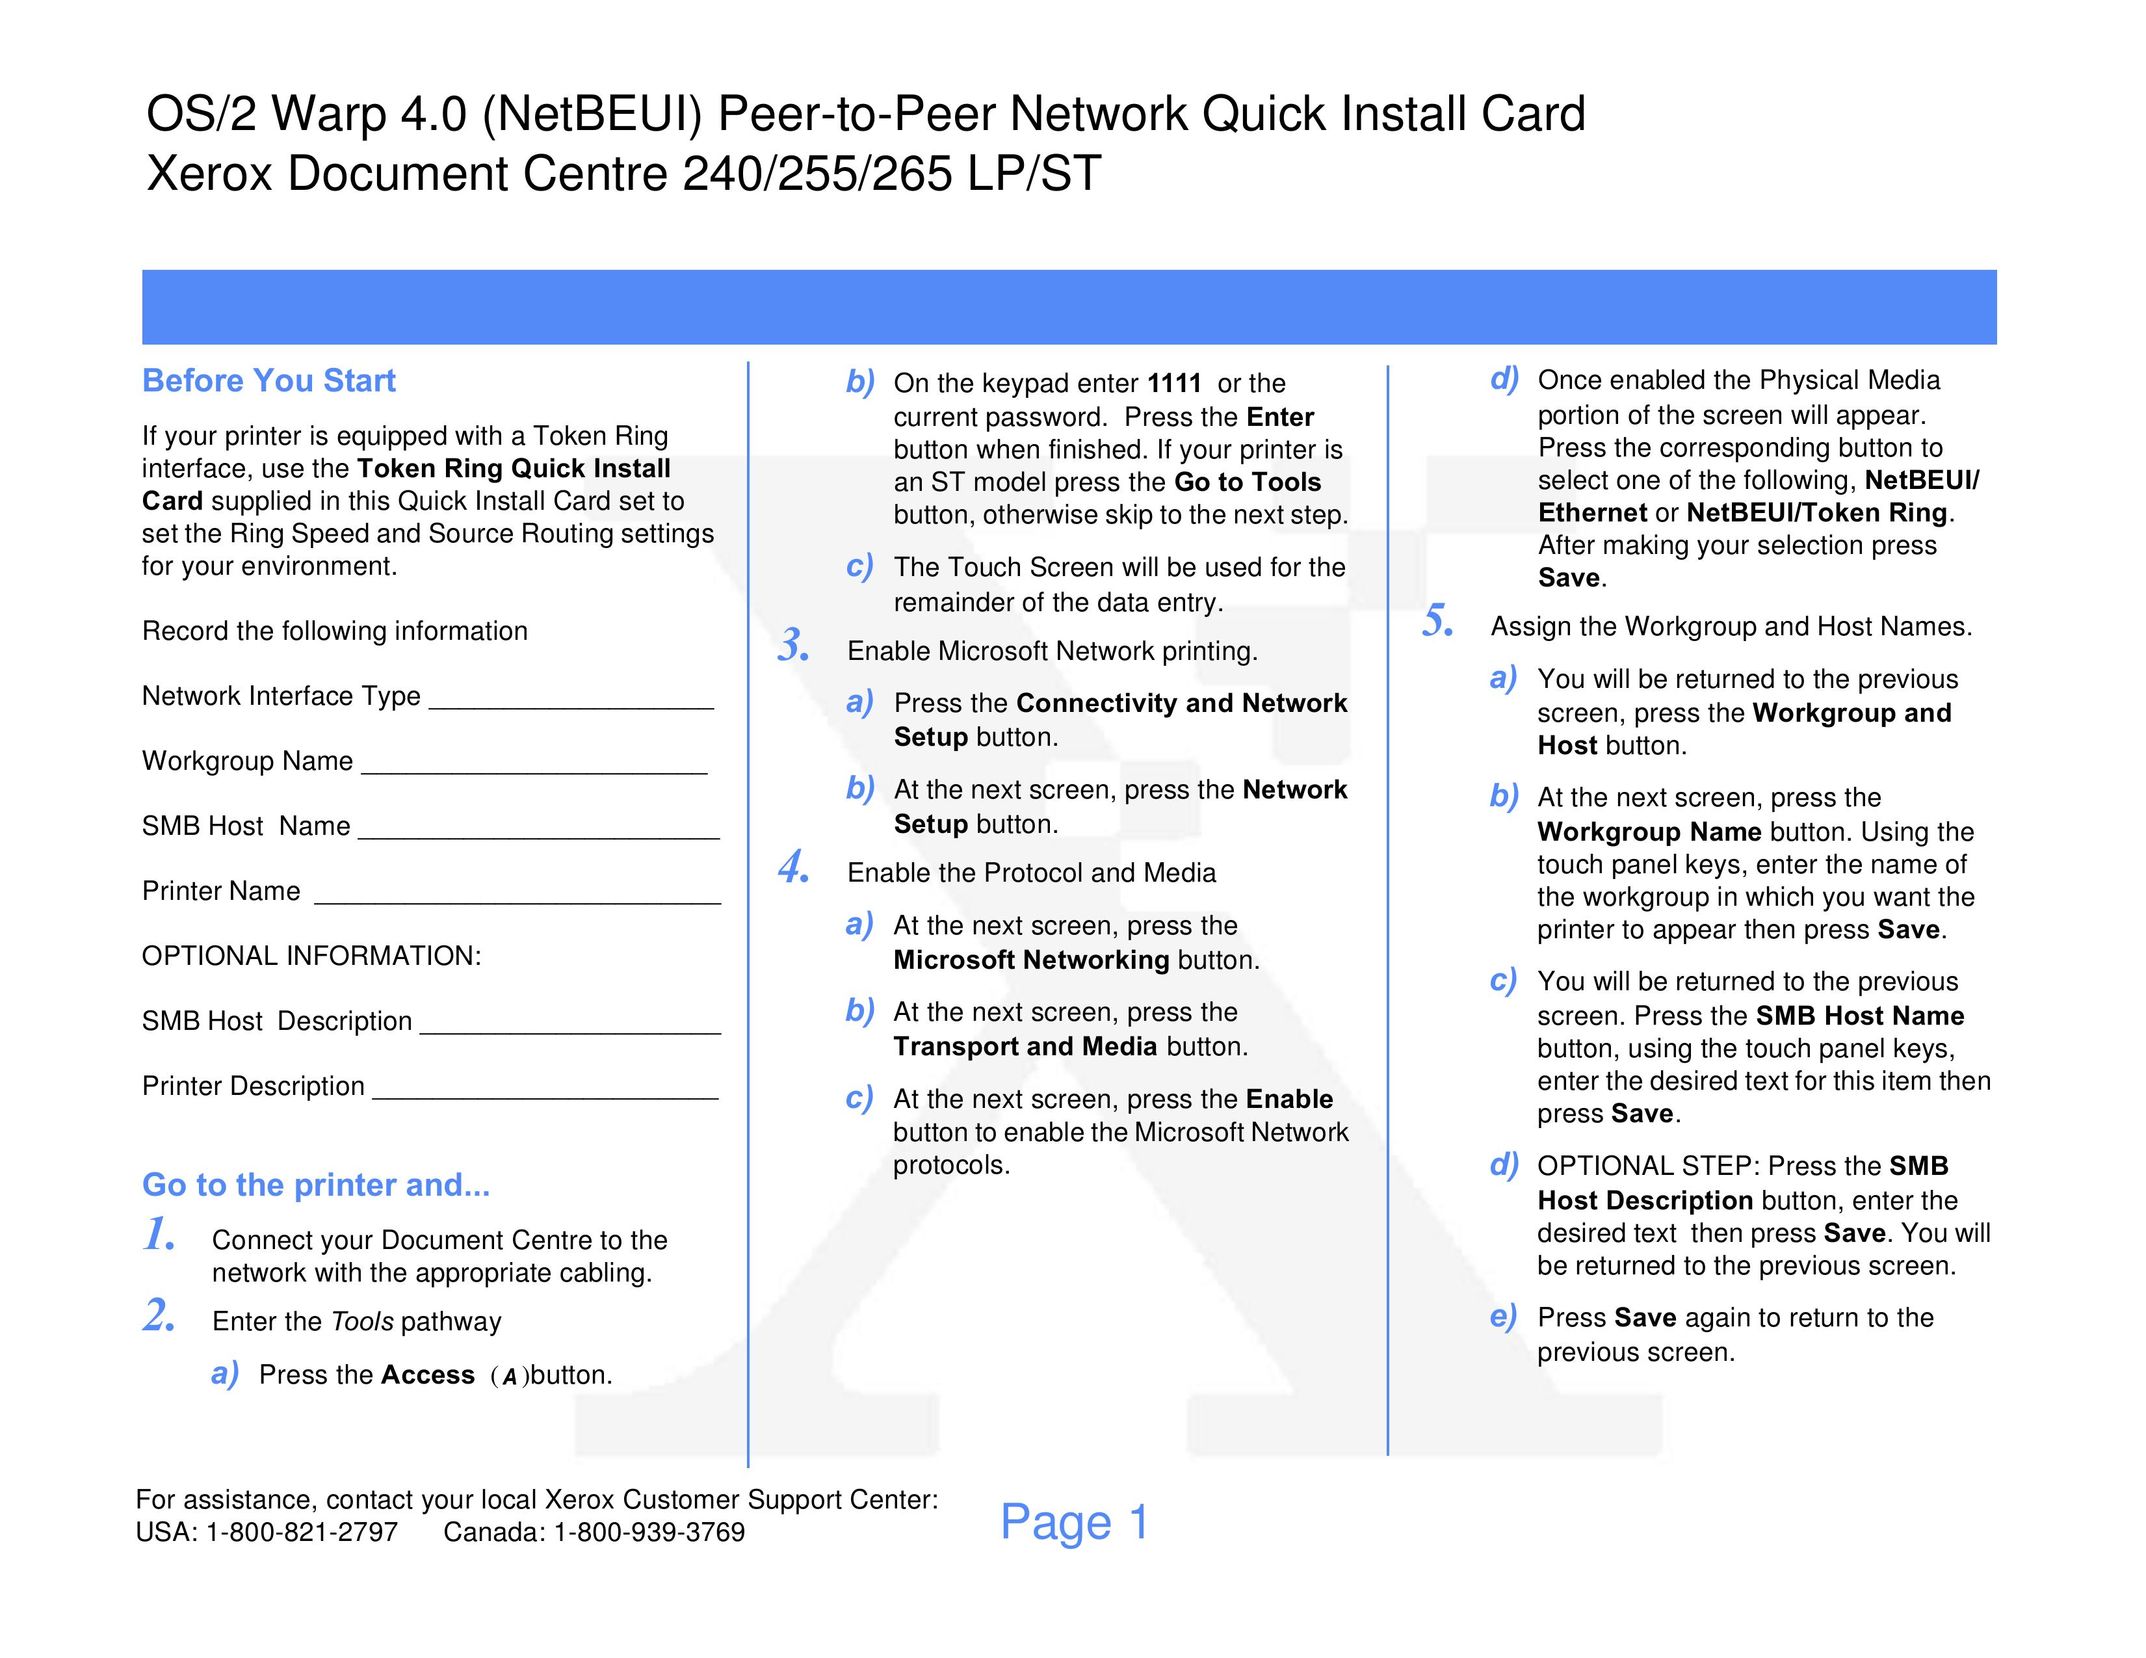 Xerox OS/2 WARP 4.0 Network Card User Manual